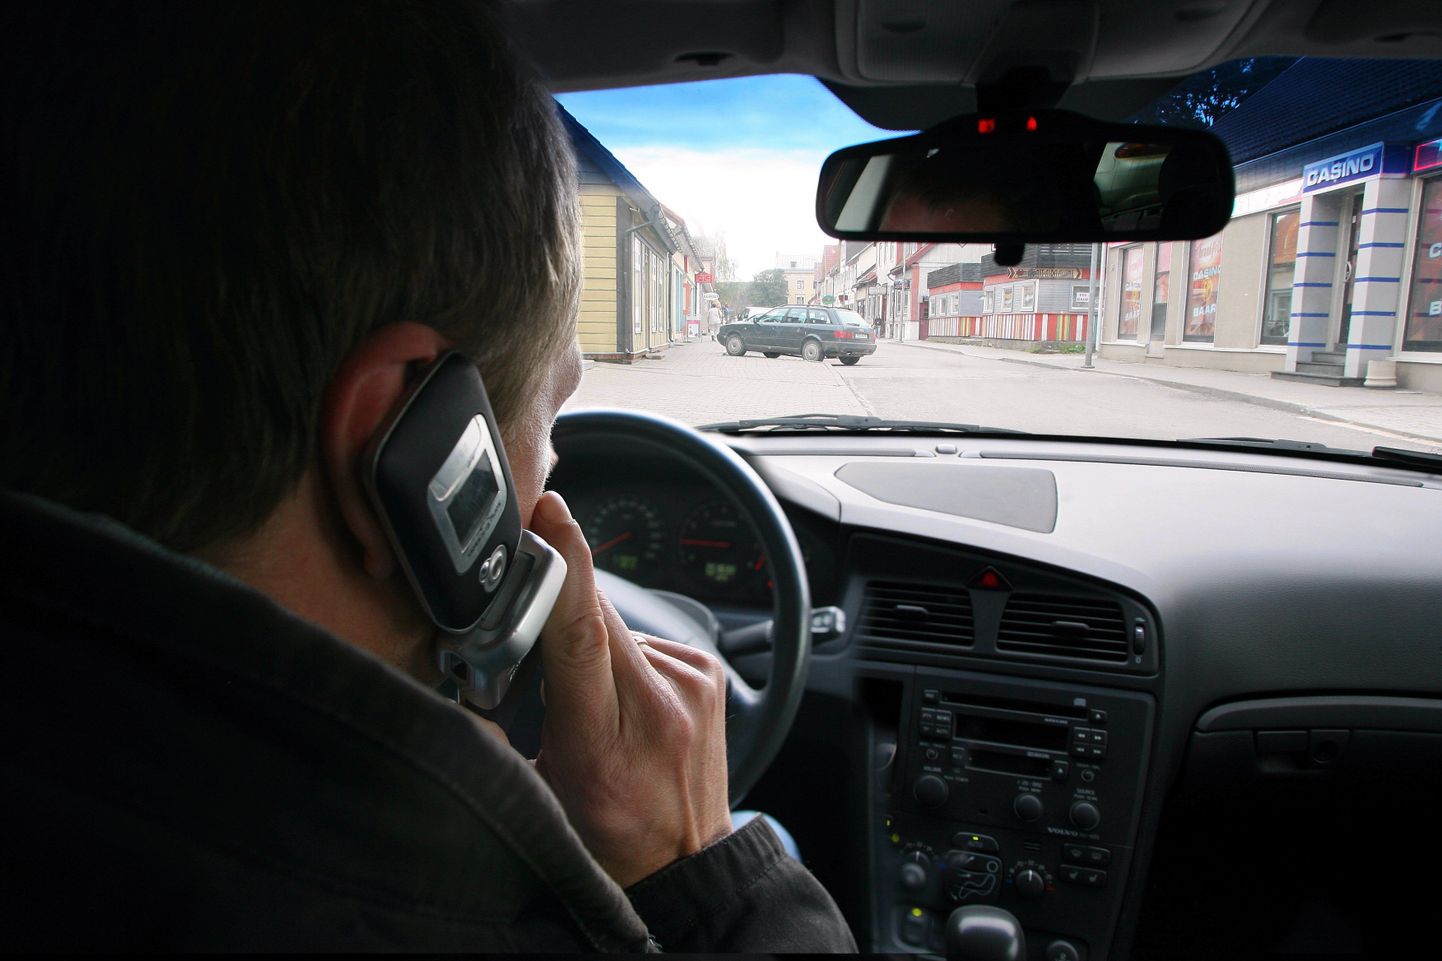 Разговаривать по мобильнику во время движения, держа телефон в руках, водителю запрещено.